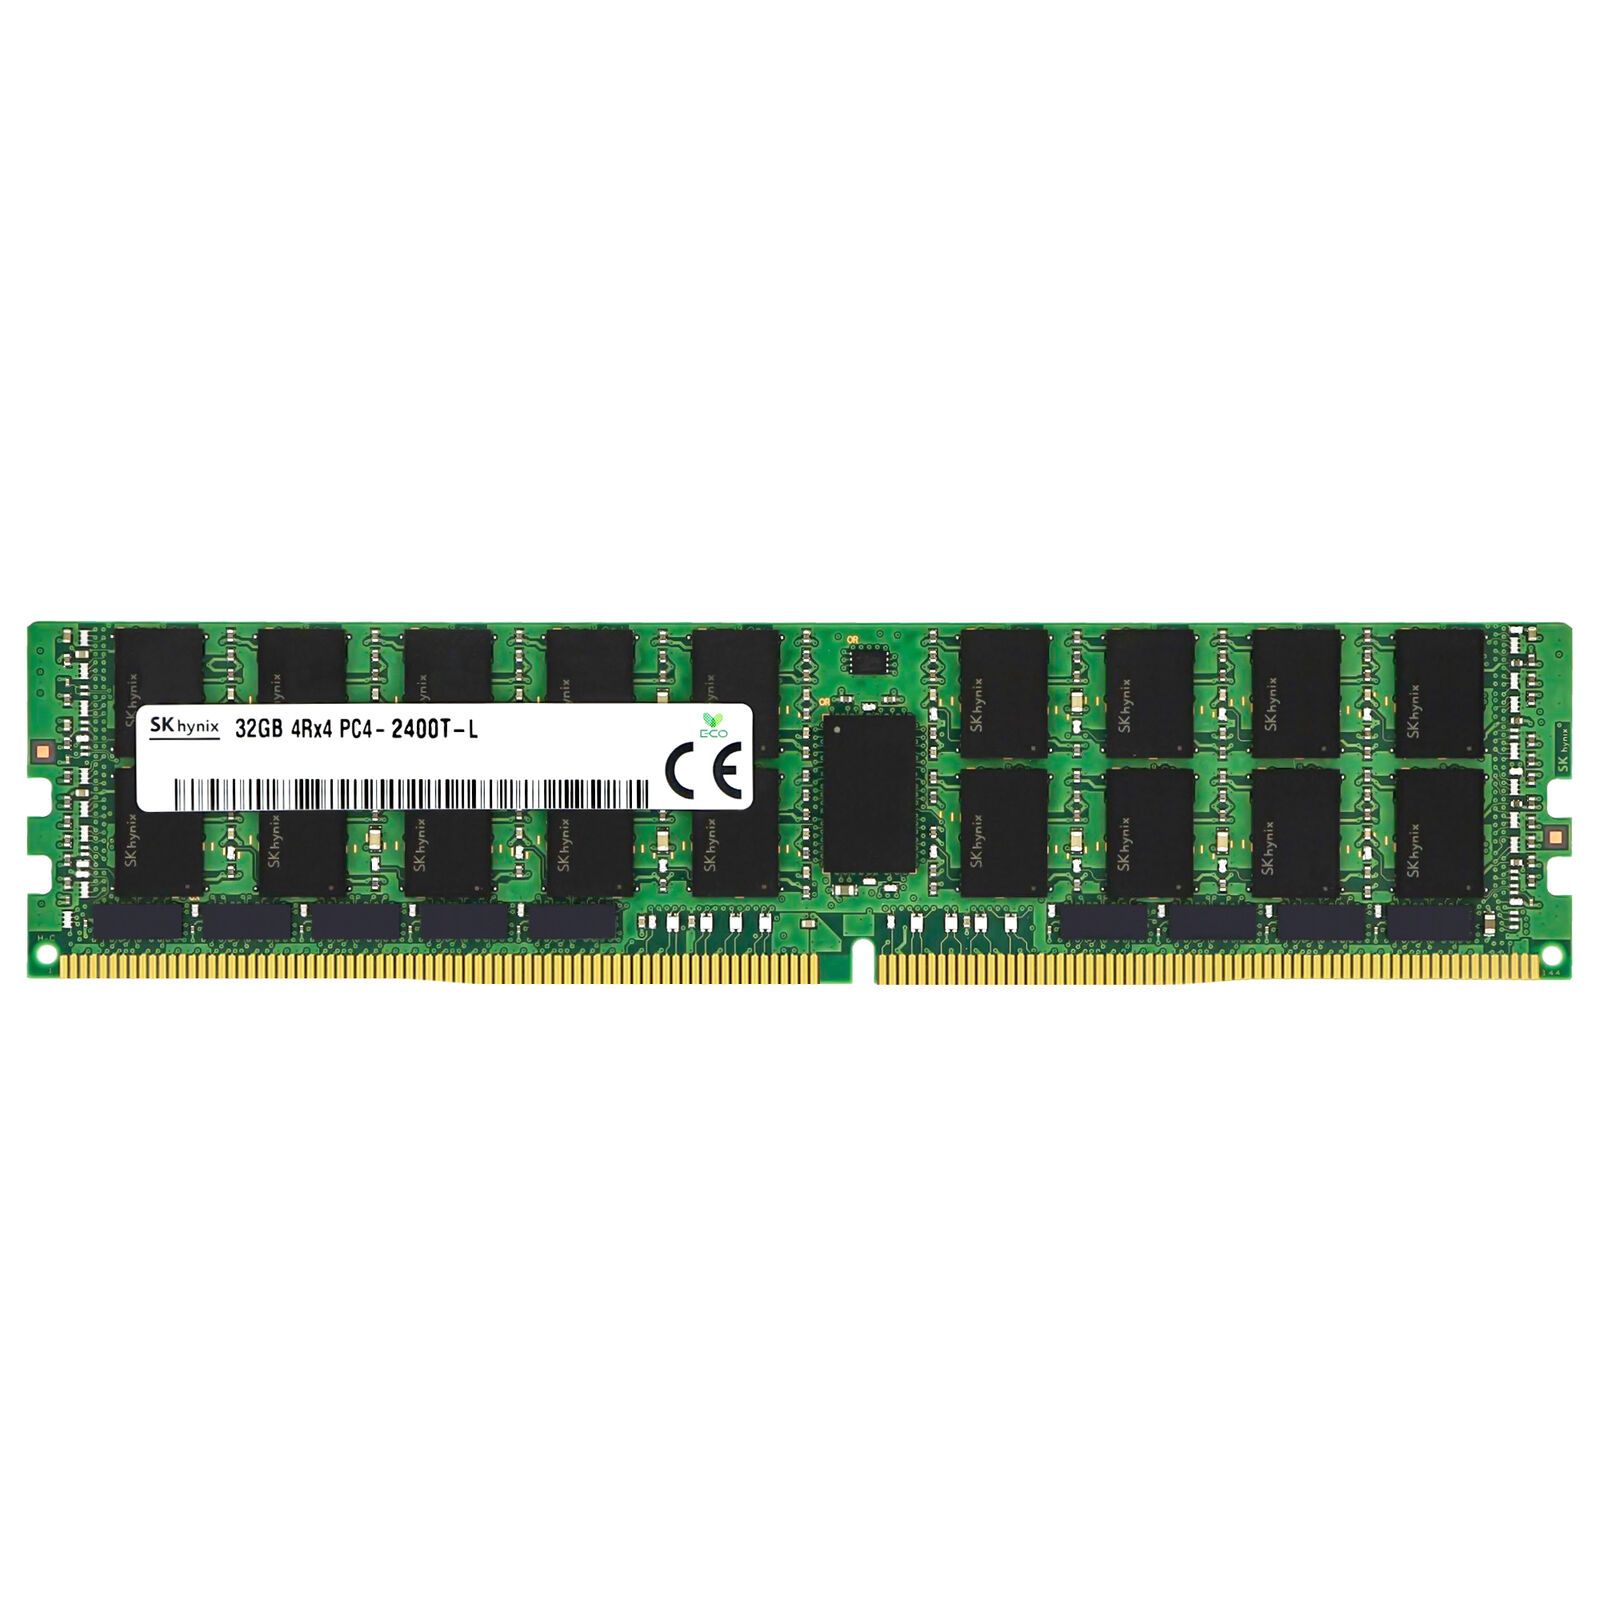 Hynix 32GB 4Rx4 PC4-2400T-L LRDIMM DDR4-19200 ECC Load Reduced Server Memory RAM